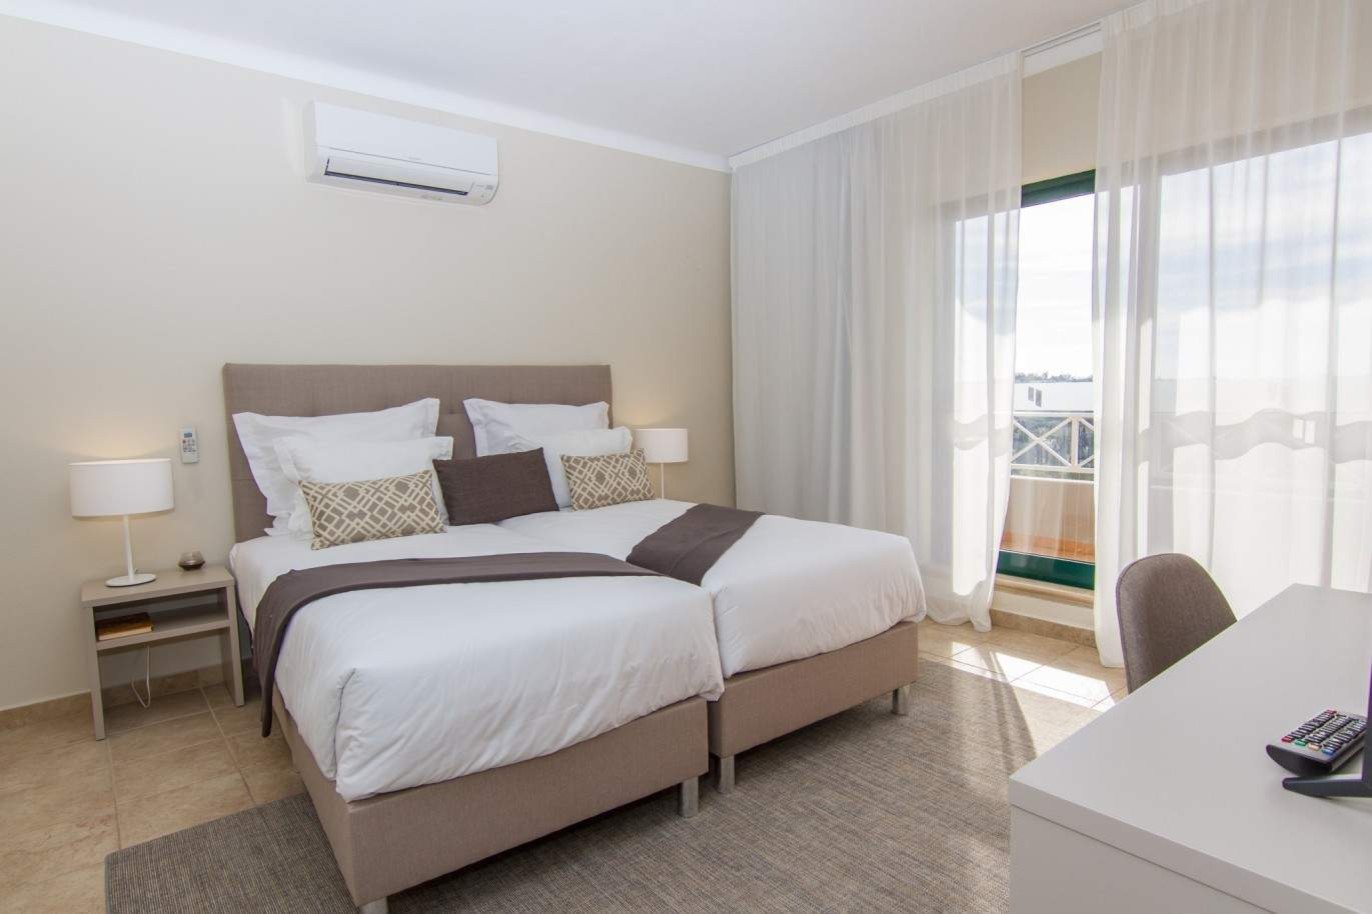 Venta de apartamento nuevo en el Carvoeiro, Algarve, Portugal_214706